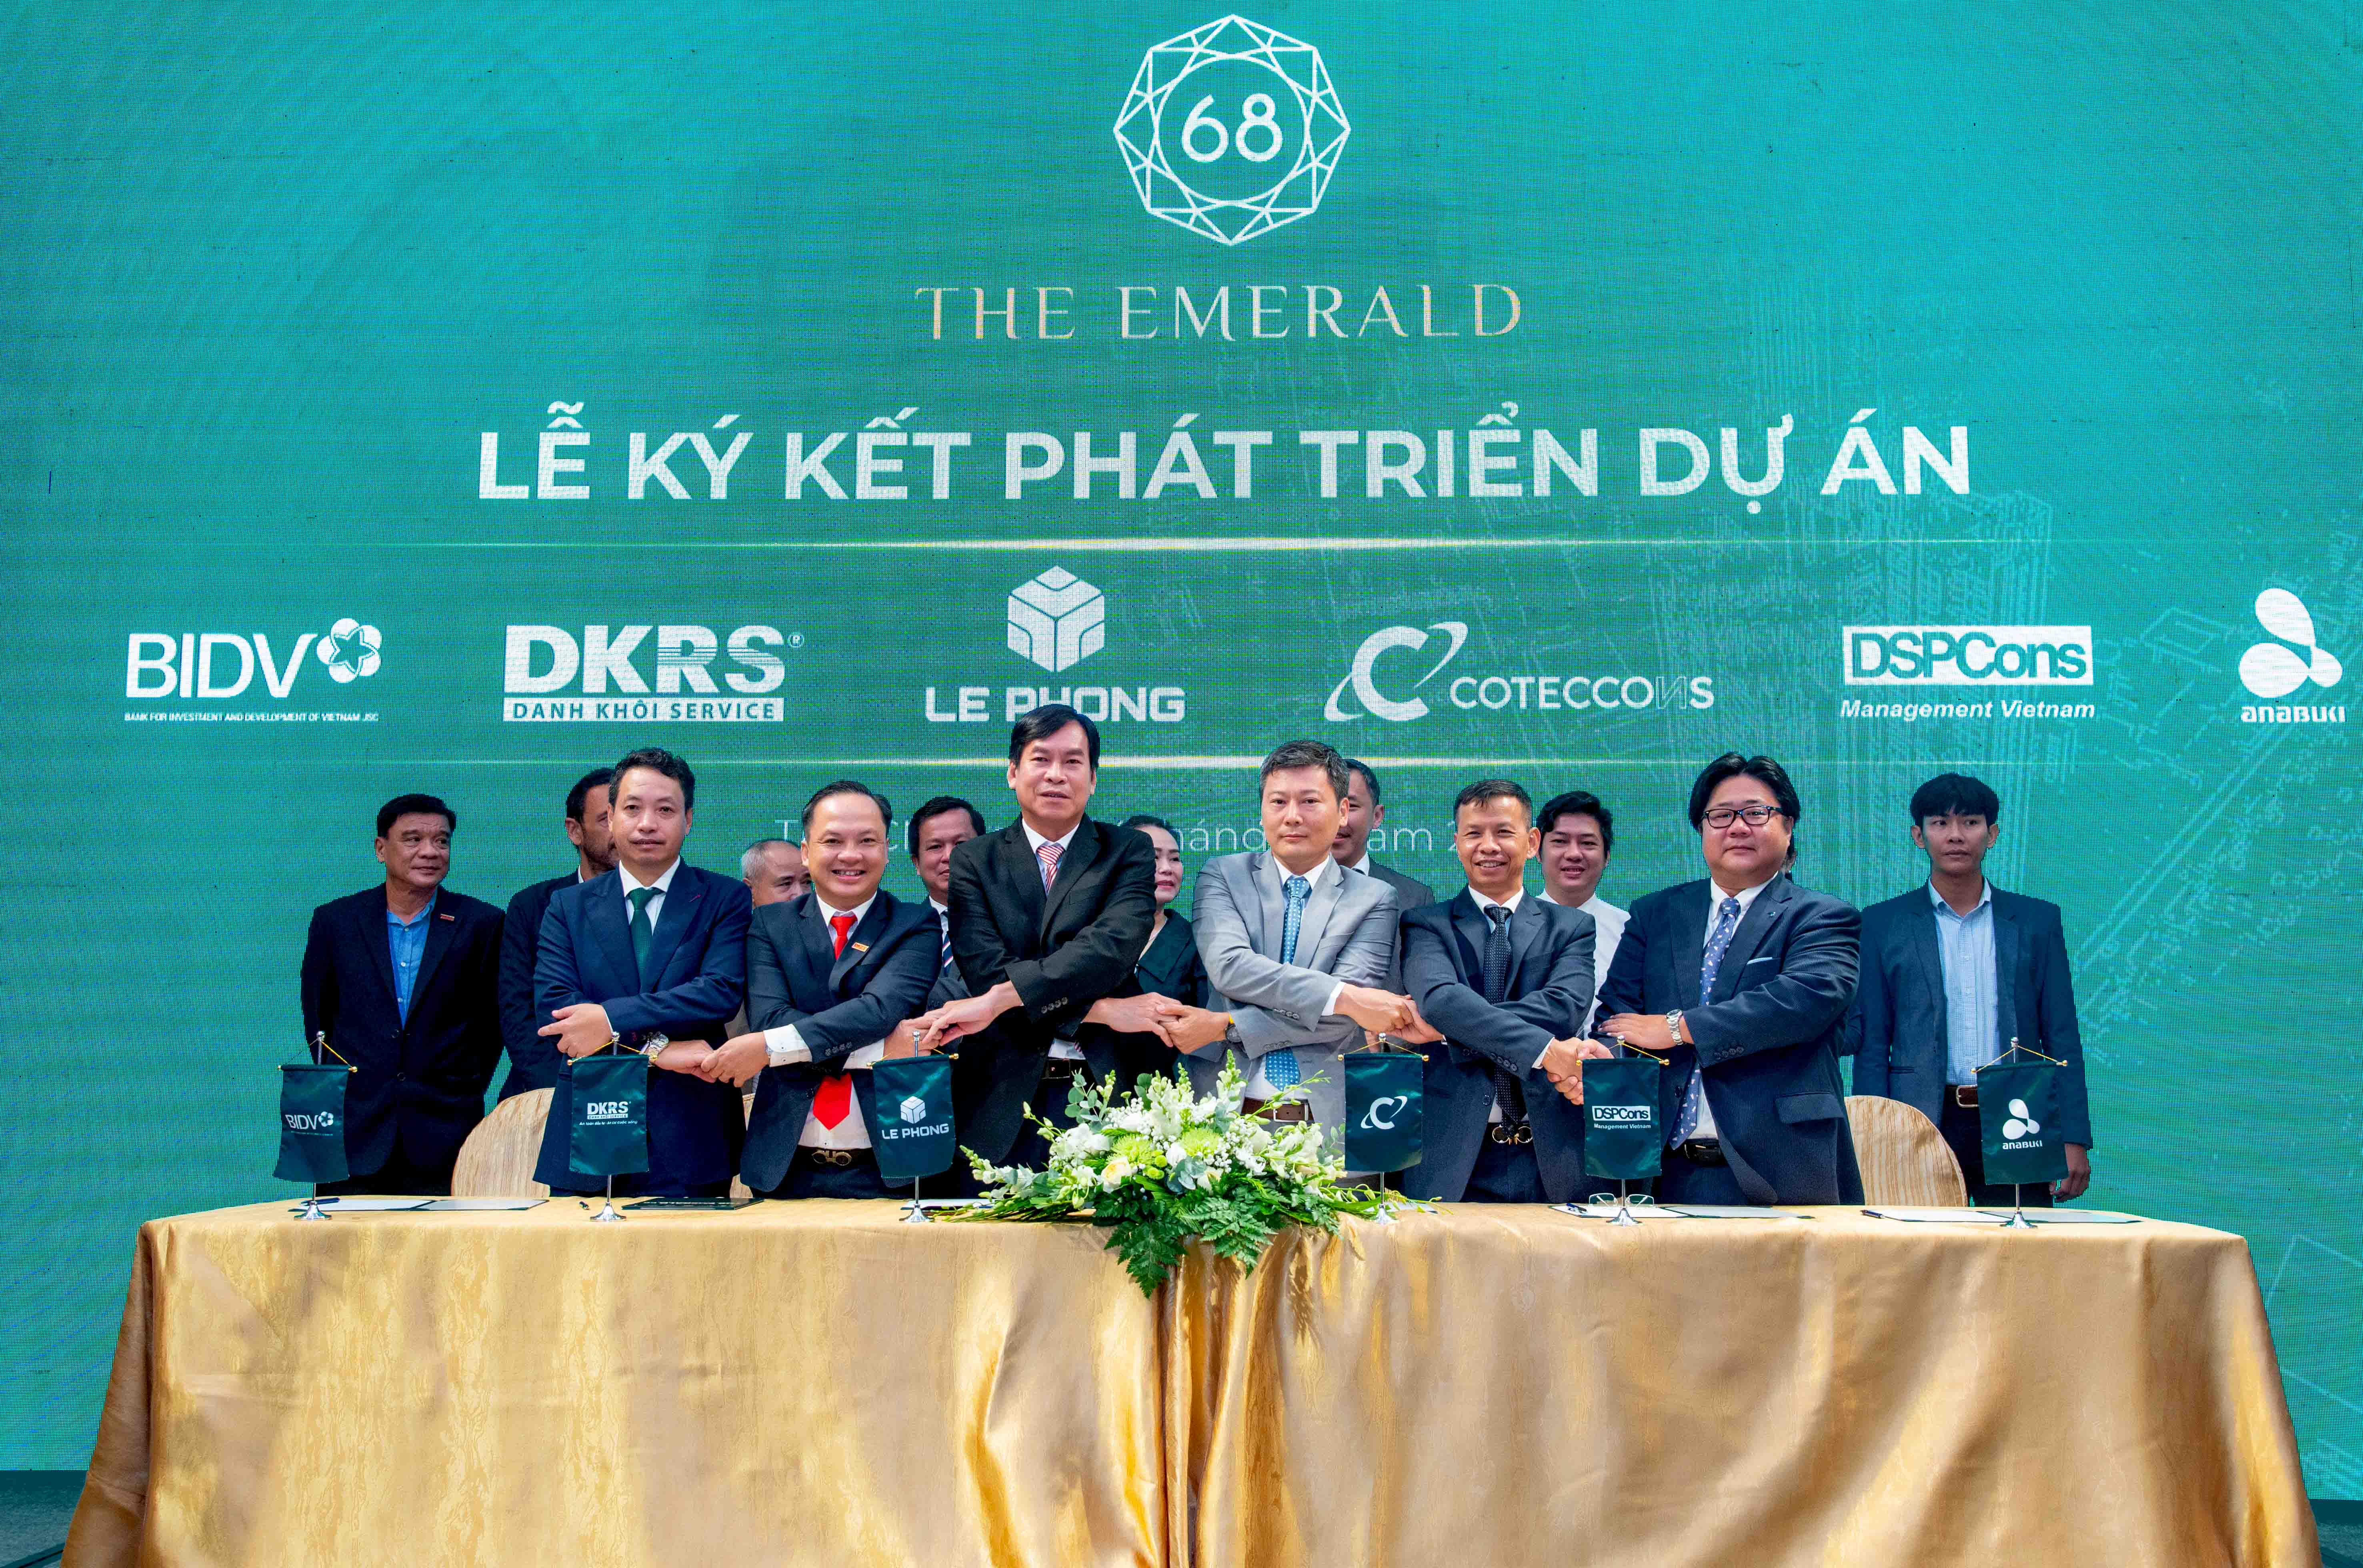 Kinh tế - Lễ ký kết phát triển dự án căn hộ cao cấp The Emerald 68